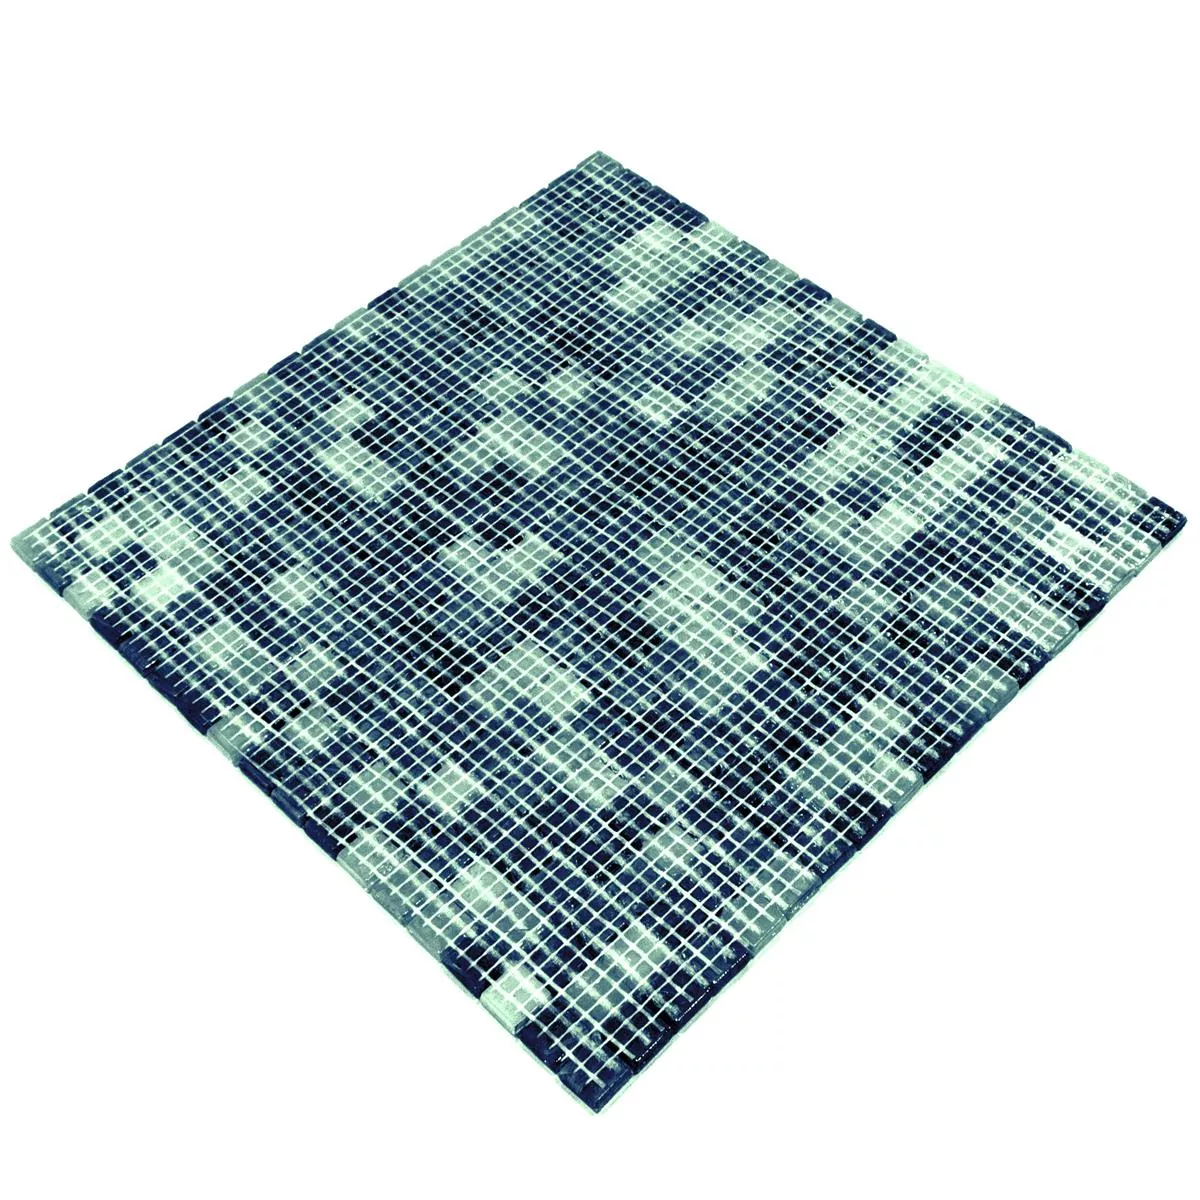 Vzorek Skleněná Mozaika Dlaždice Catalina Modrá Zelená Mix